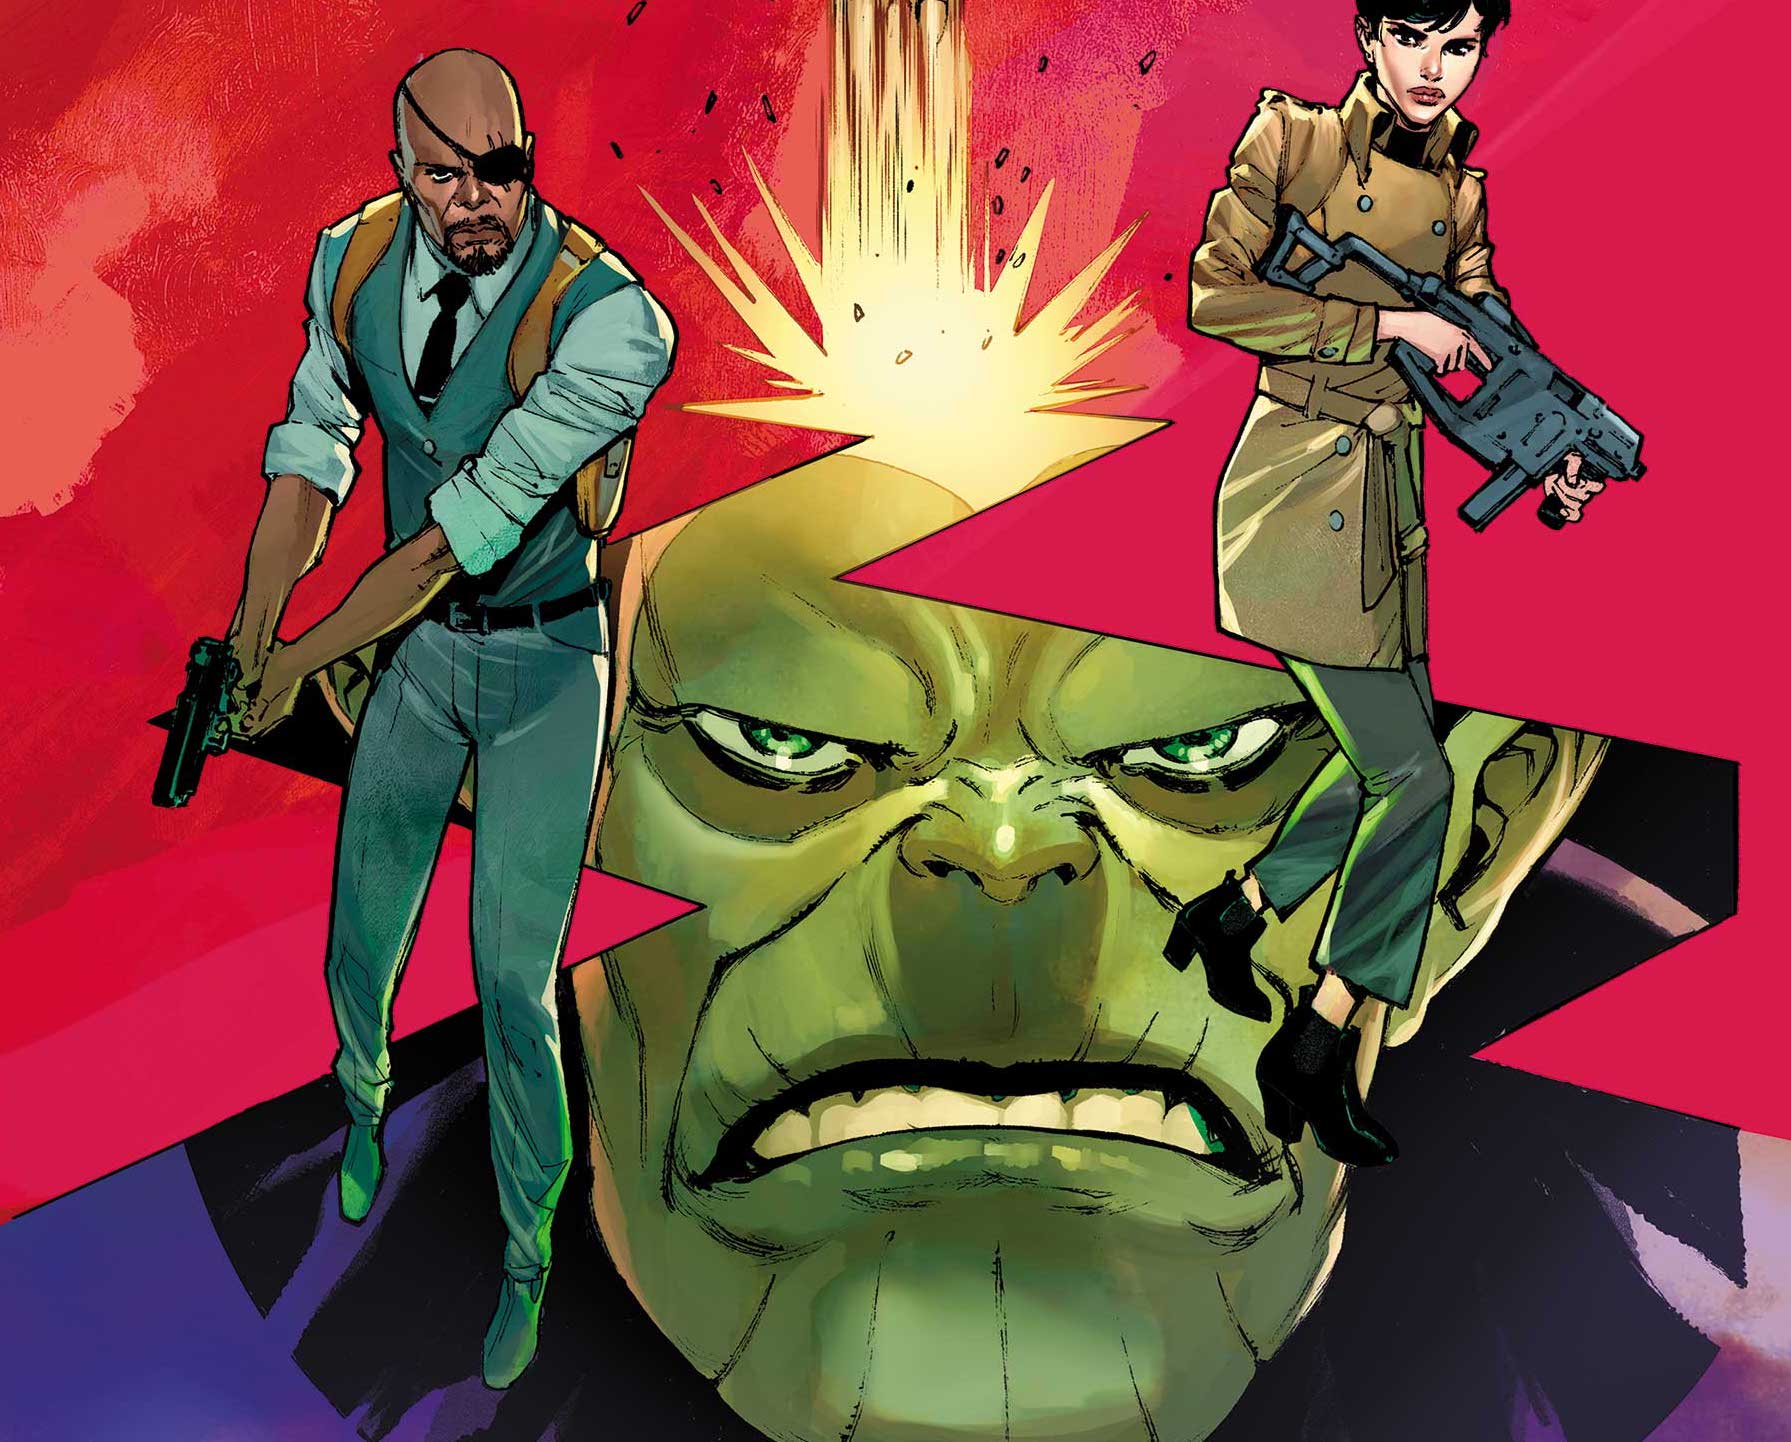 'Secret Invasion' #1 sets up Skrull secret agents